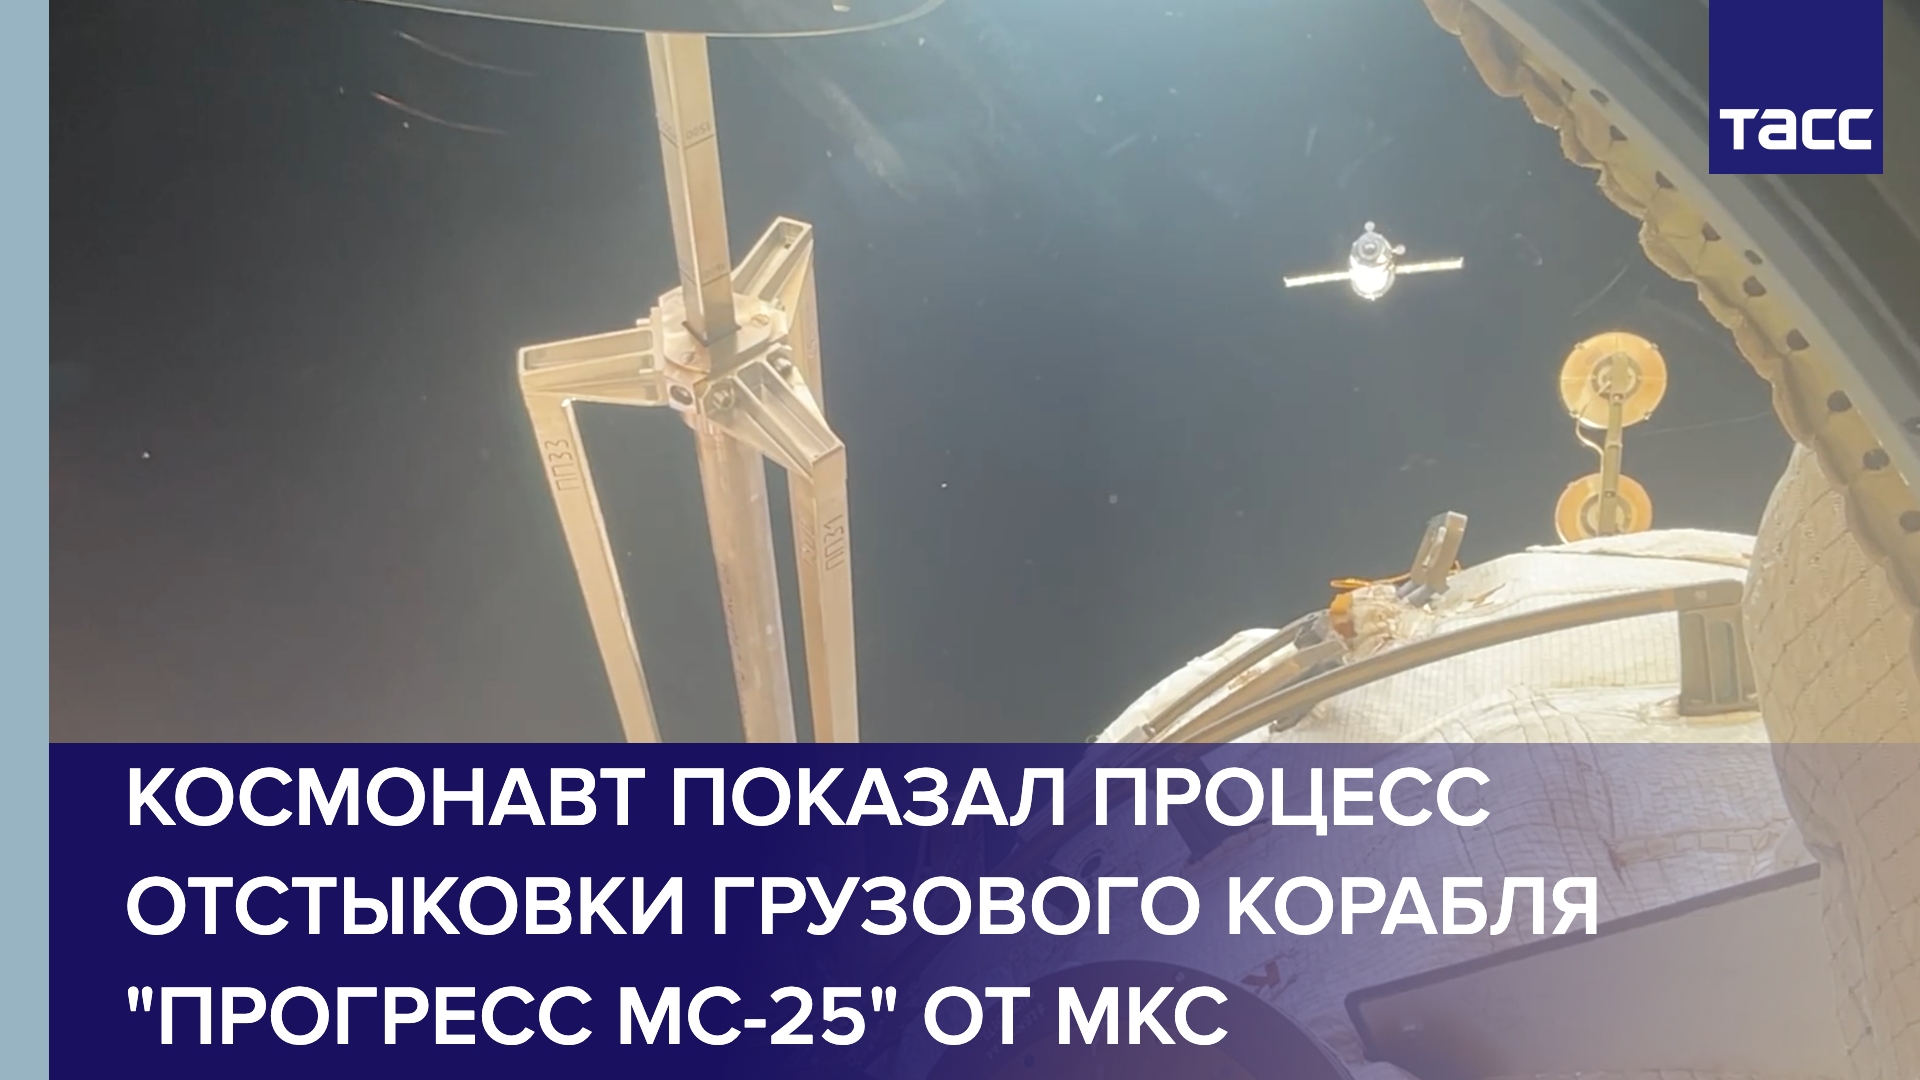 Космонавт показал процесс отстыковки грузового корабля "Прогресс МС-25" от МКС